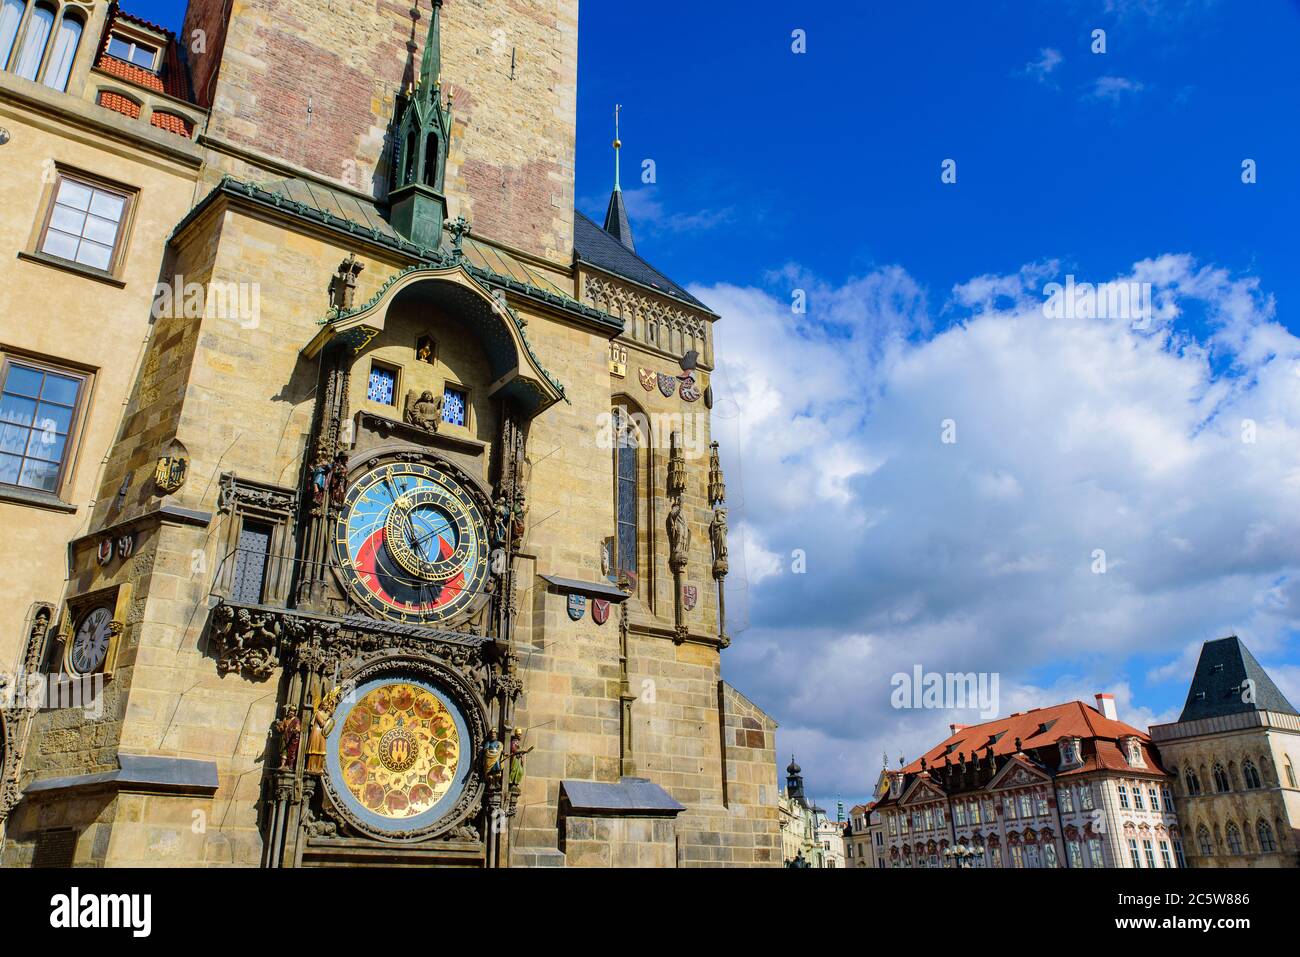 Horloge astronomique à la place de la Vieille ville de Prague, République tchèque Banque D'Images